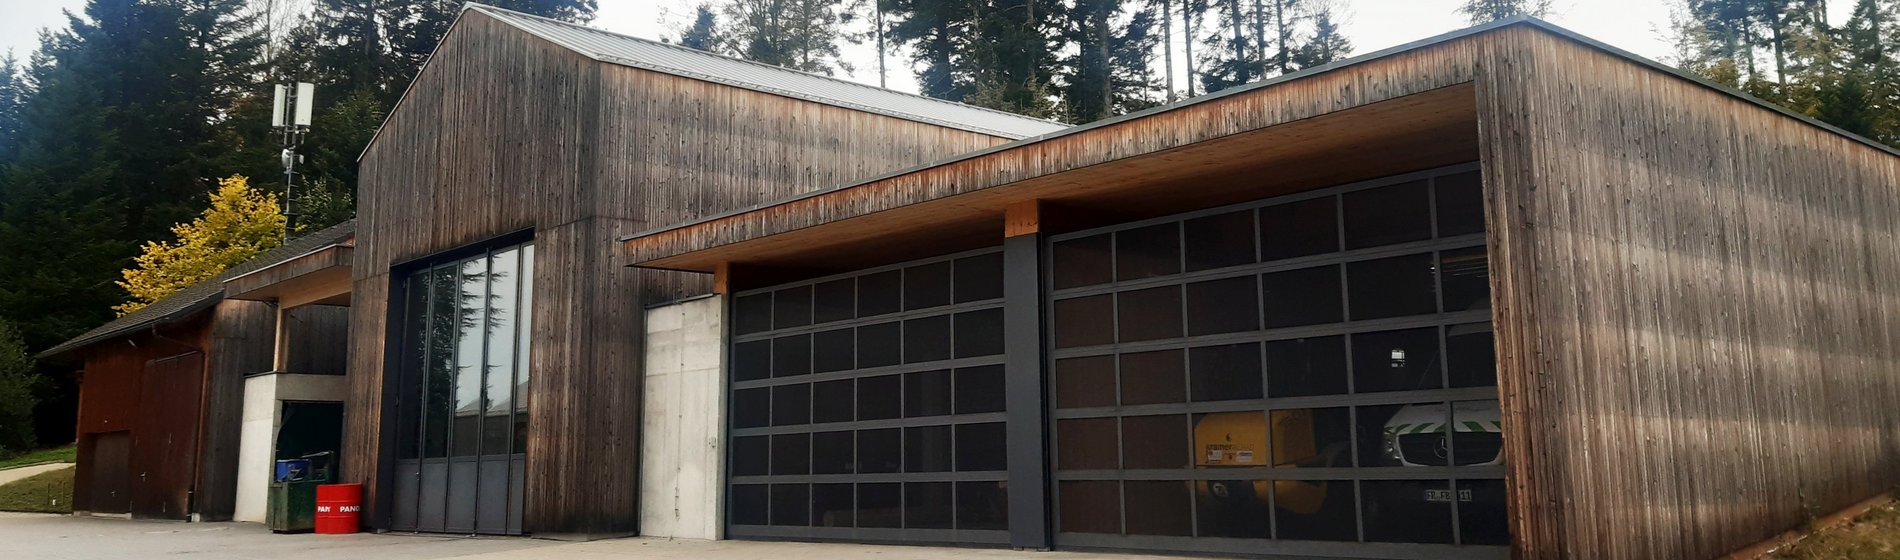 Außenansicht Funktionsgebäude des Maschinenbetriebs mit Garagen.